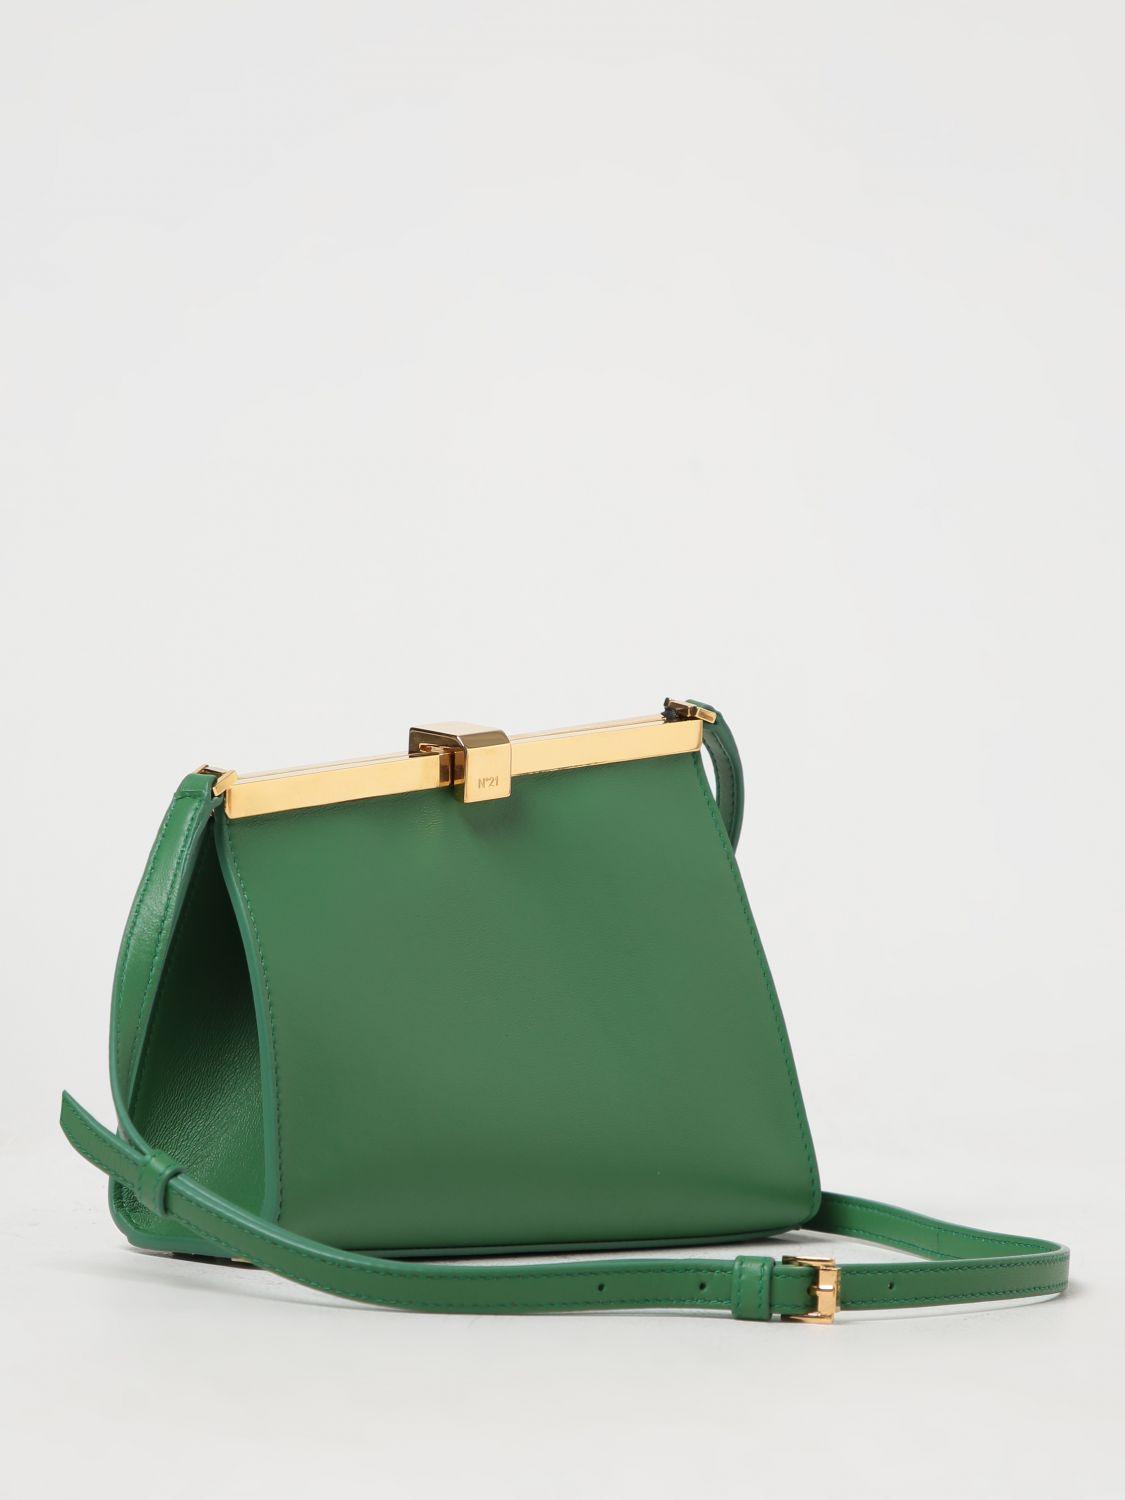 Buy flaunt it Girls Green Shoulder Bag green Online @ Best Price in India |  Flipkart.com